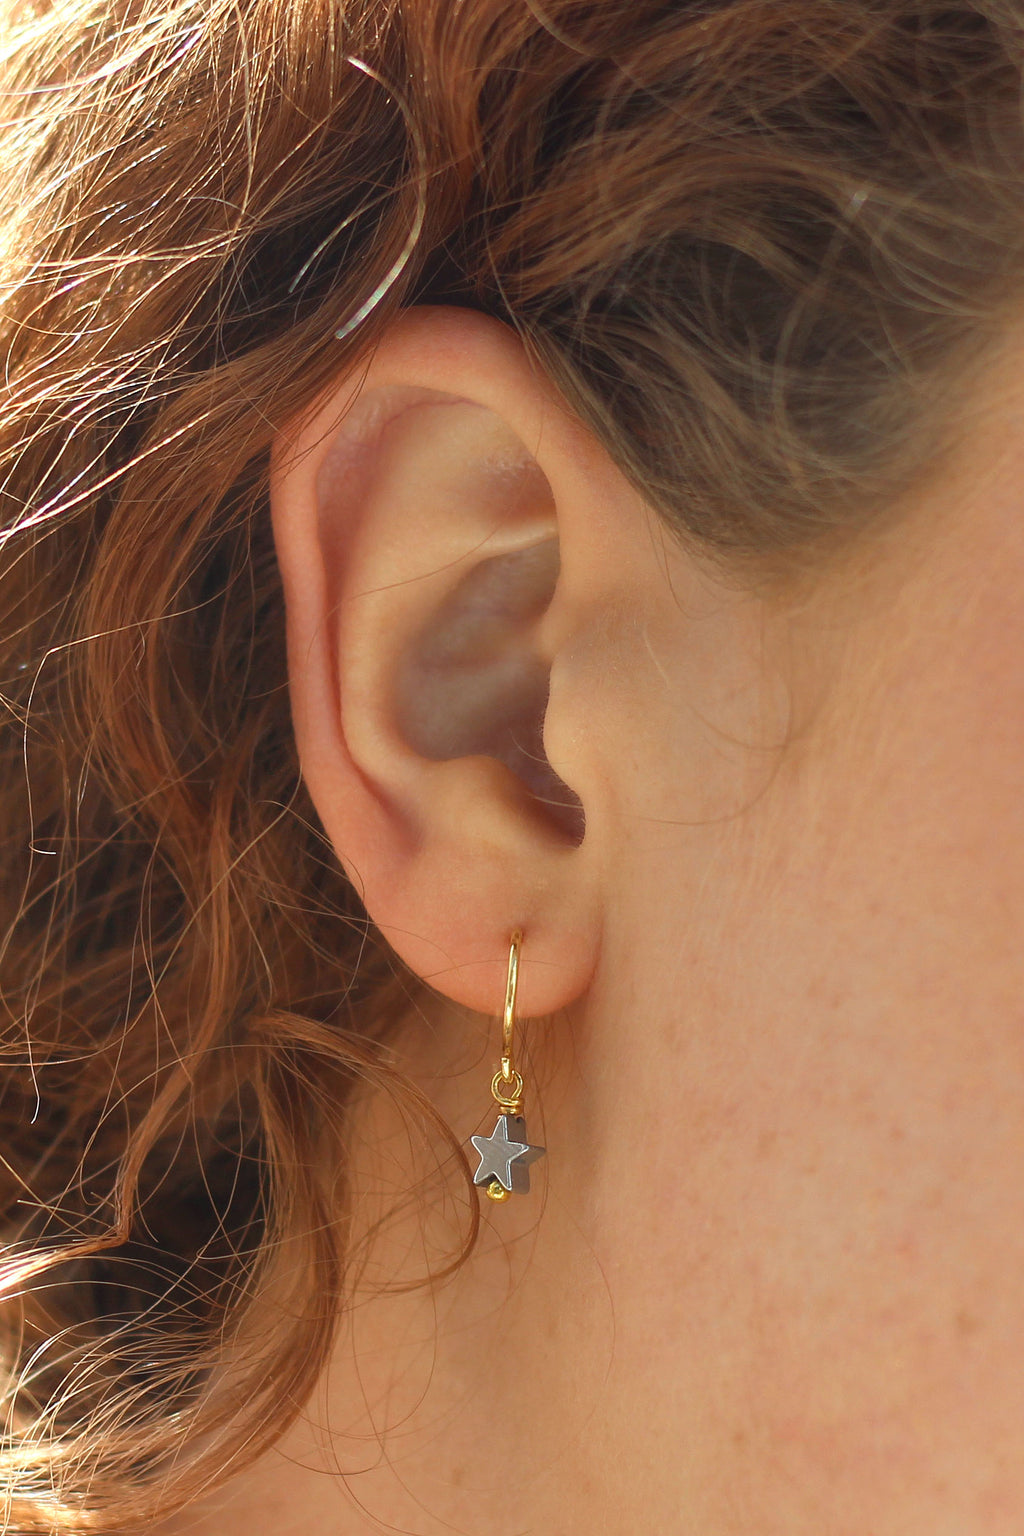 Kerrie Berrie Handmade Star Earrings in Silver and Gold